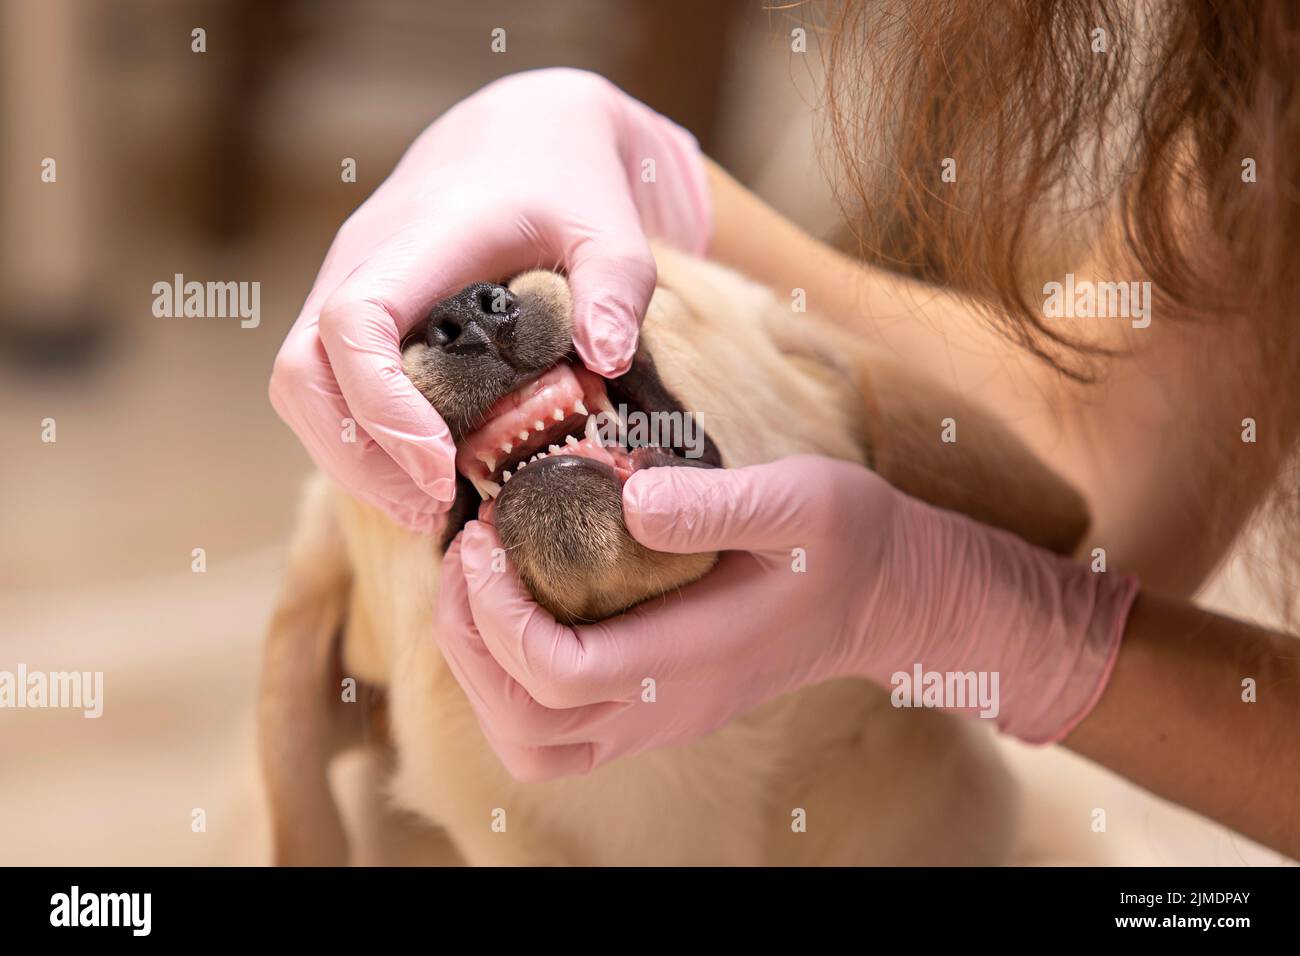 Veterinarian examining teeth of a cute dog on blur backboard Stock Photo